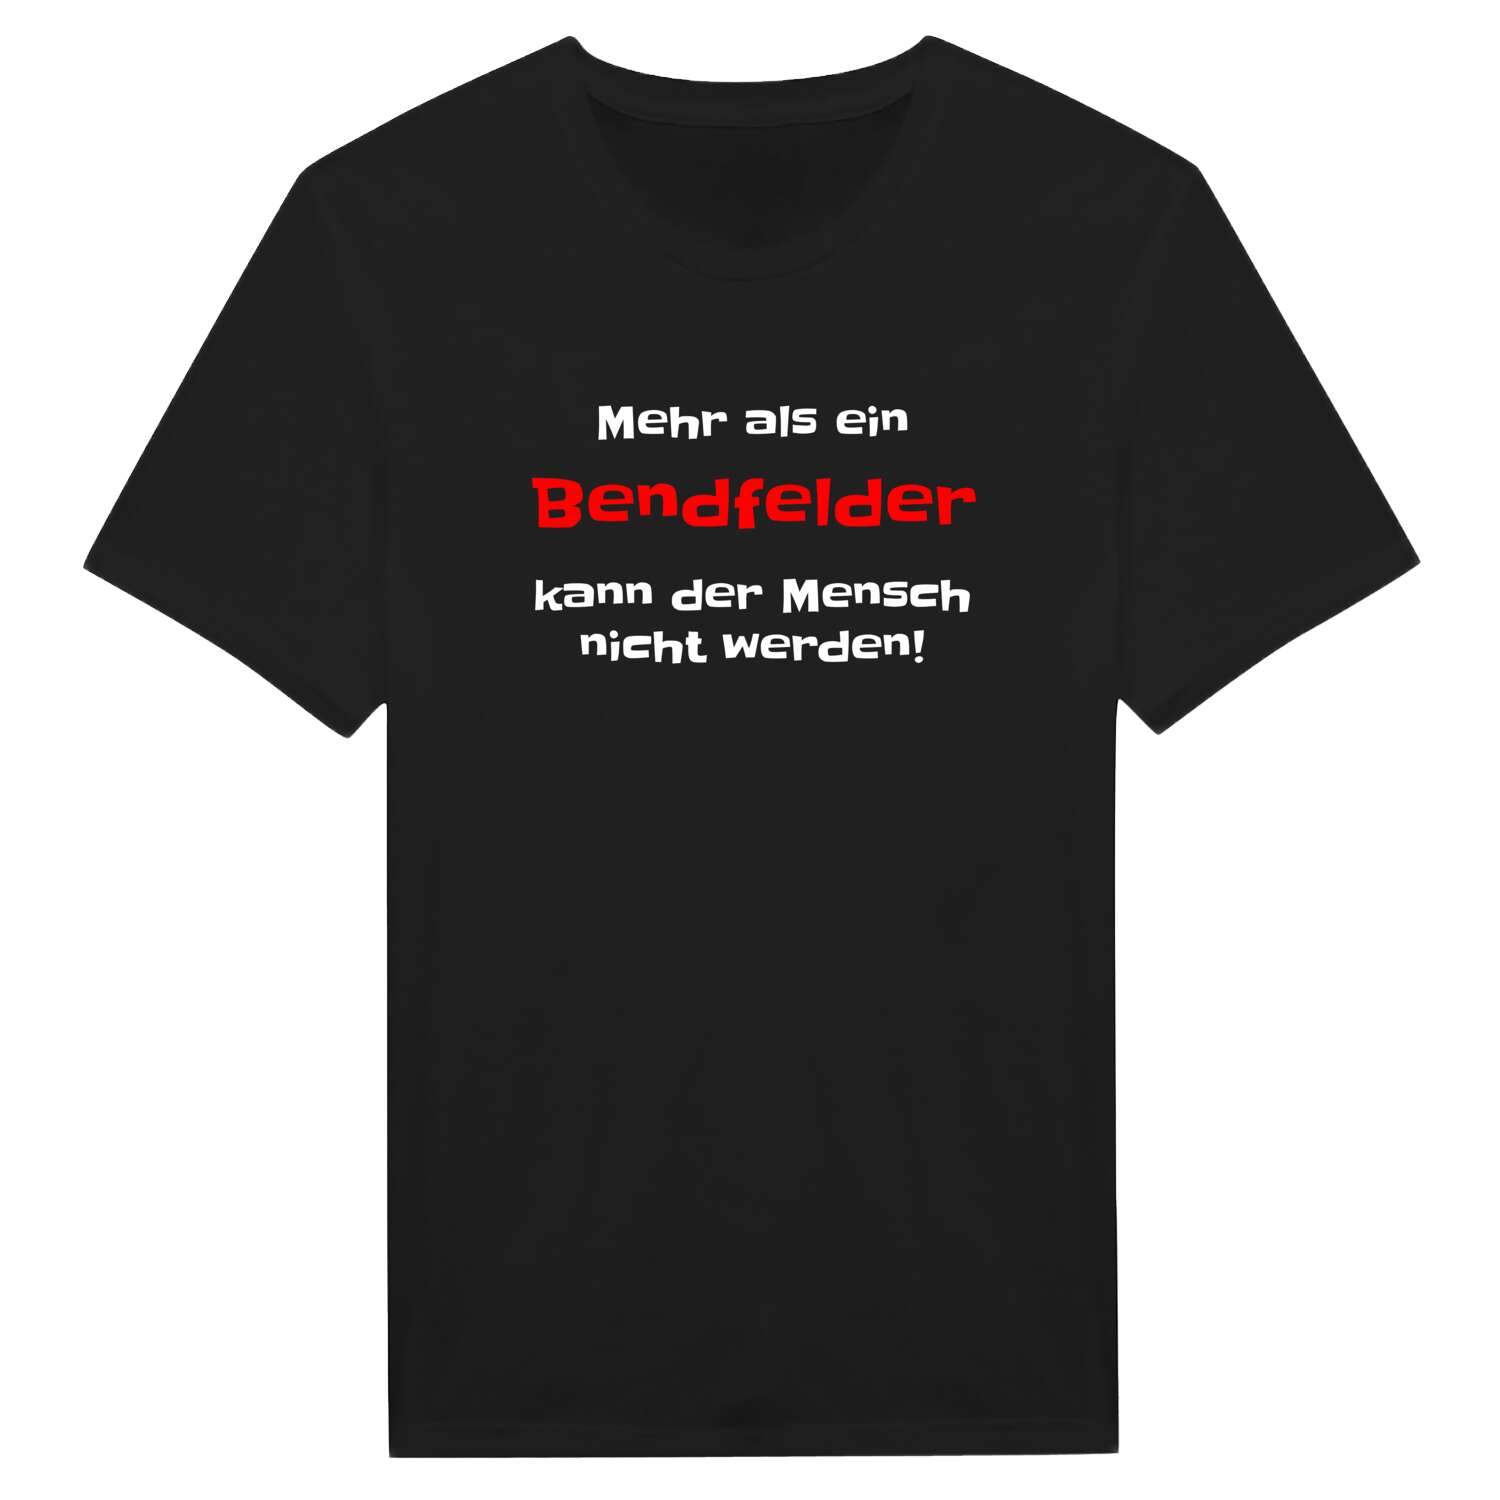 Bendfeld T-Shirt »Mehr als ein«